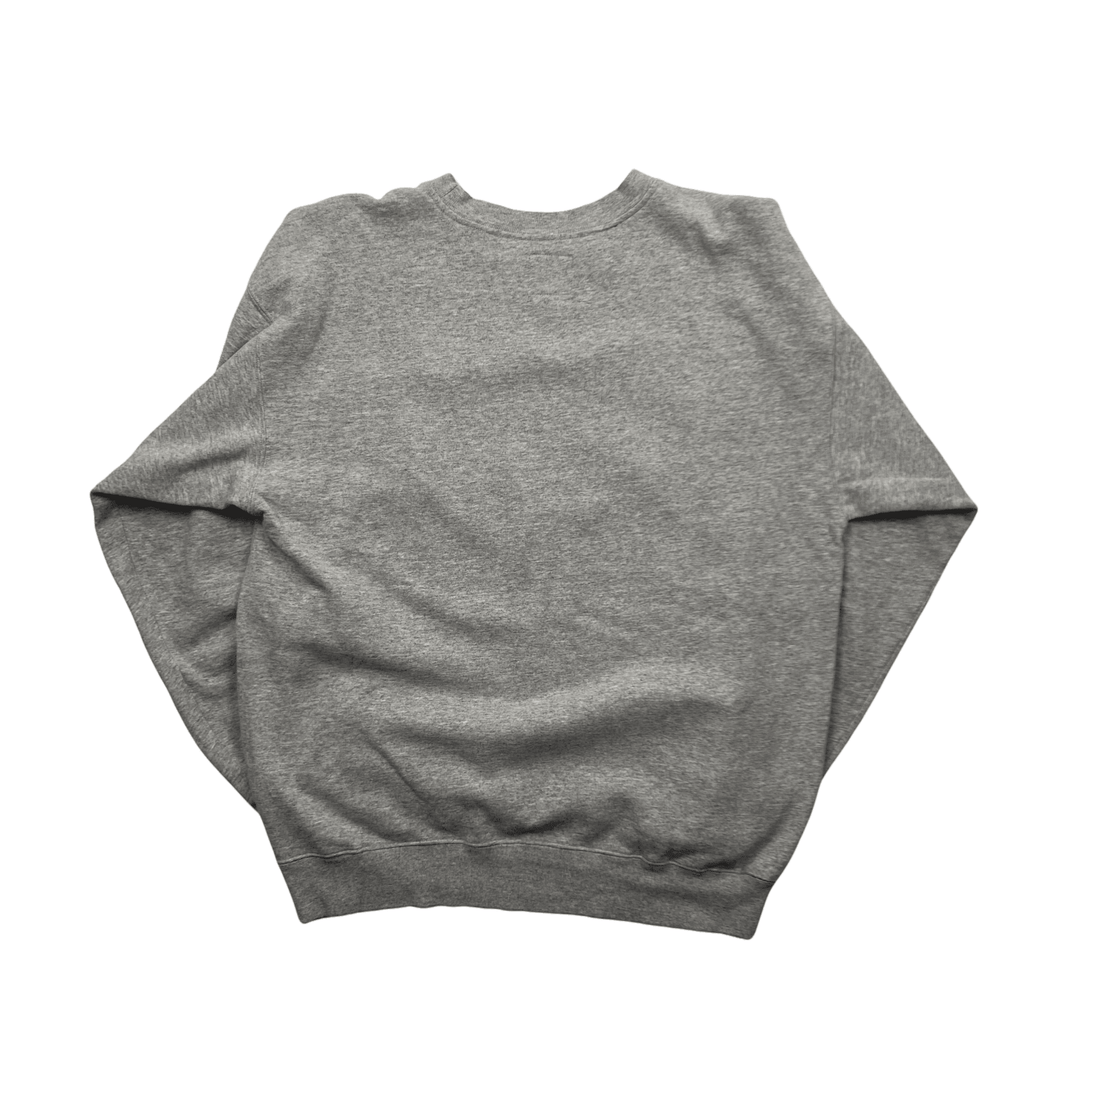 Vintage Grey Starter NFL Vikings Spell-Out Sweatshirt - Medium - The Streetwear Studio